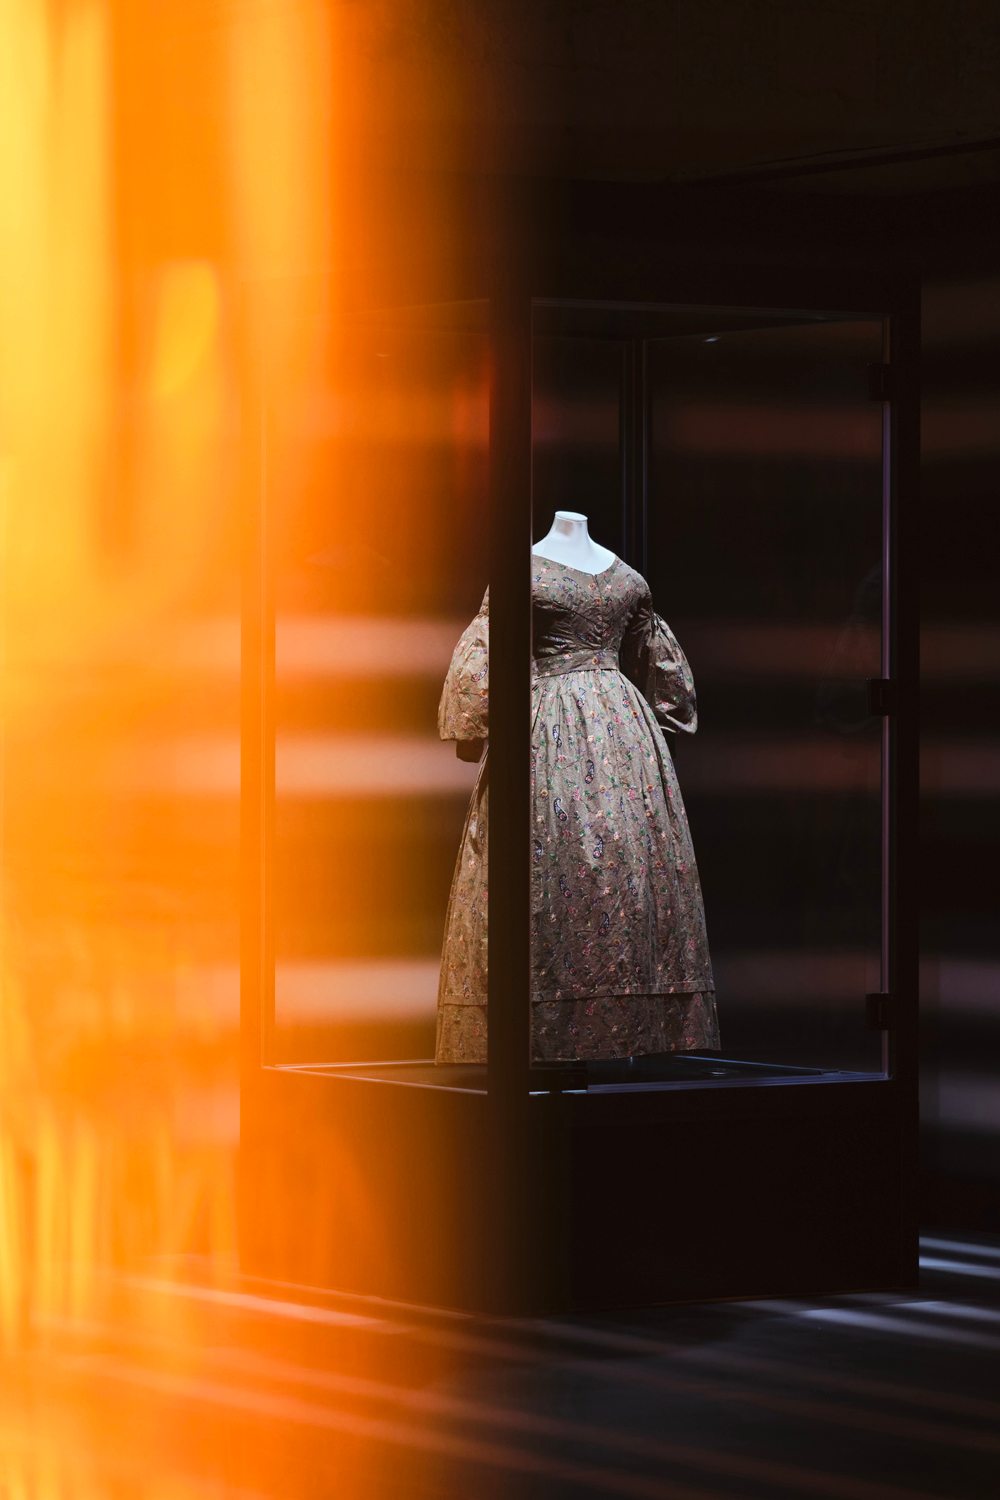 Légende : Robe de mariée, Angleterre, entre 1835 et 1840, don de Mme Catherine Rose © Crédits photo V&A.